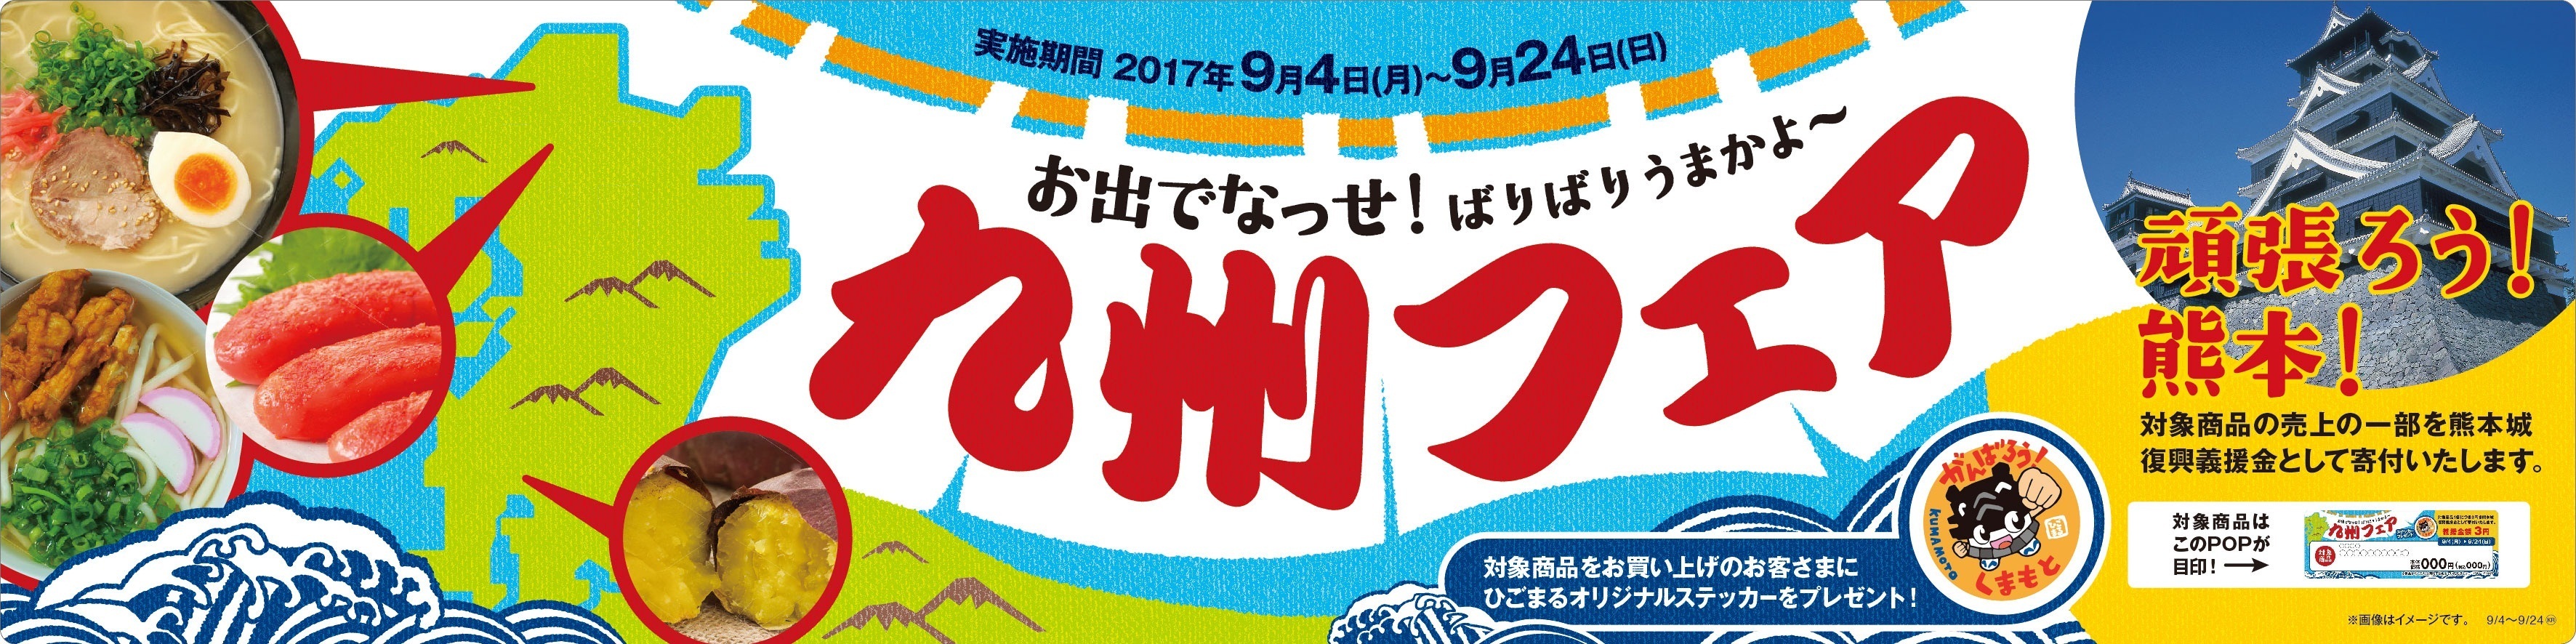 熊本城復興支援 頑張ろう 熊本 ９ ４ 月 より 九州フェア 開催 ミニストップ株式会社のプレスリリース